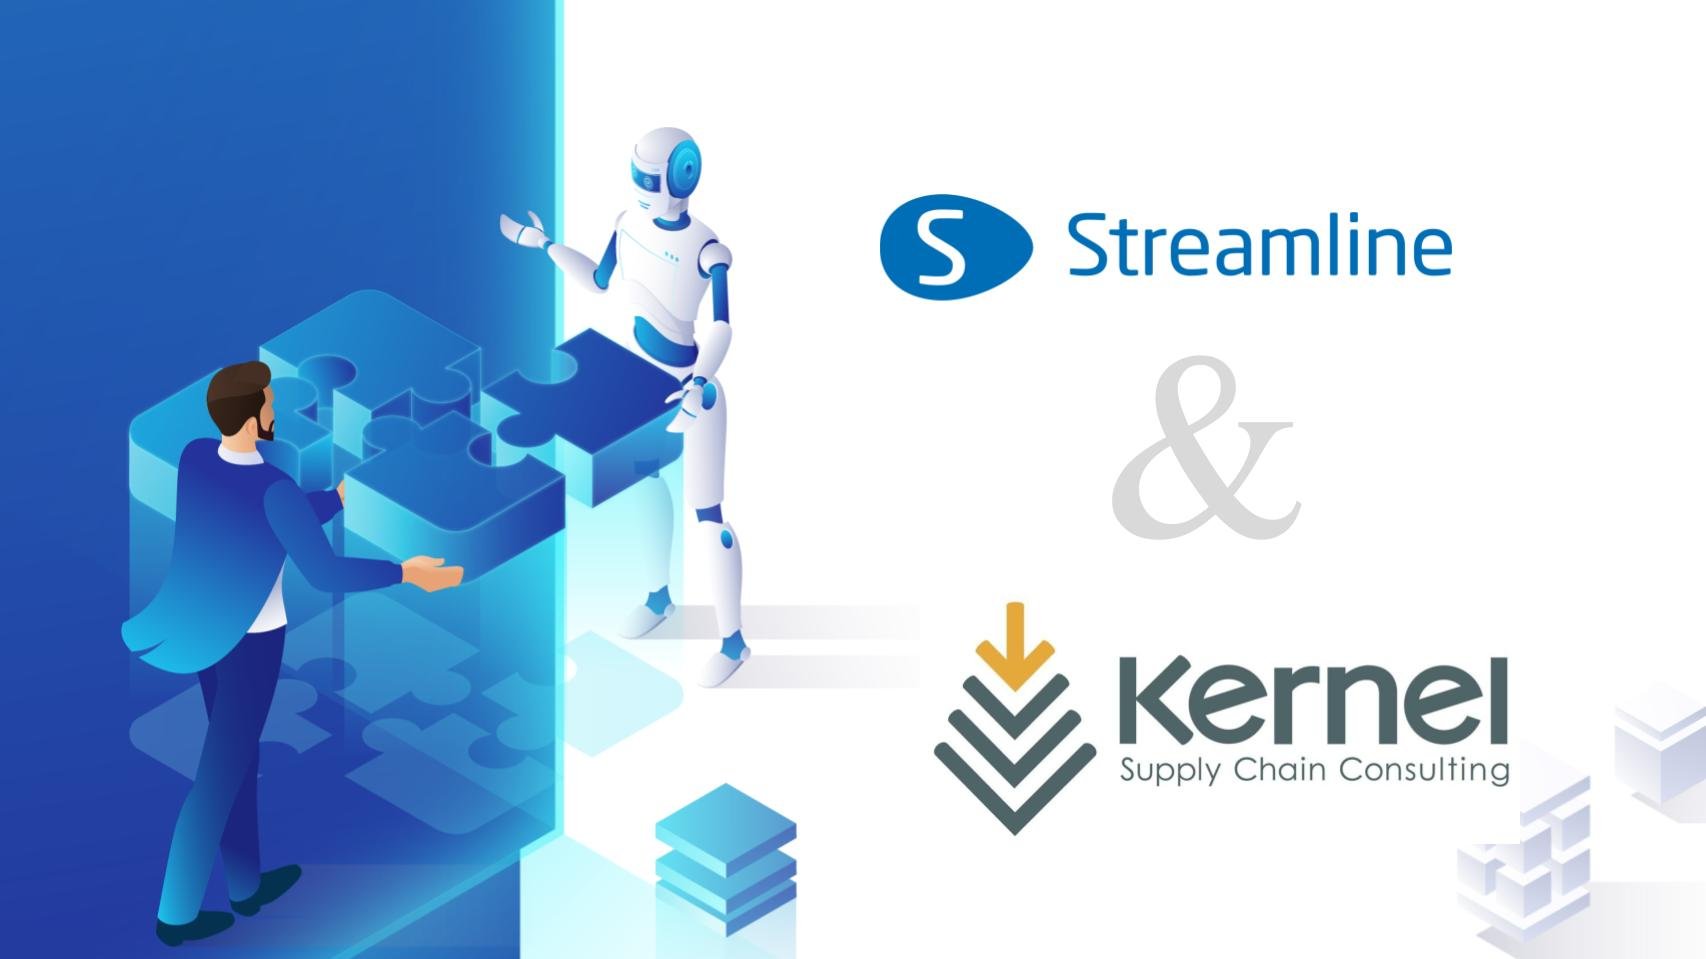 GMDH Streamline ve Kernel Supply Chain Consulting değerli bir ortaklığı duyurdu